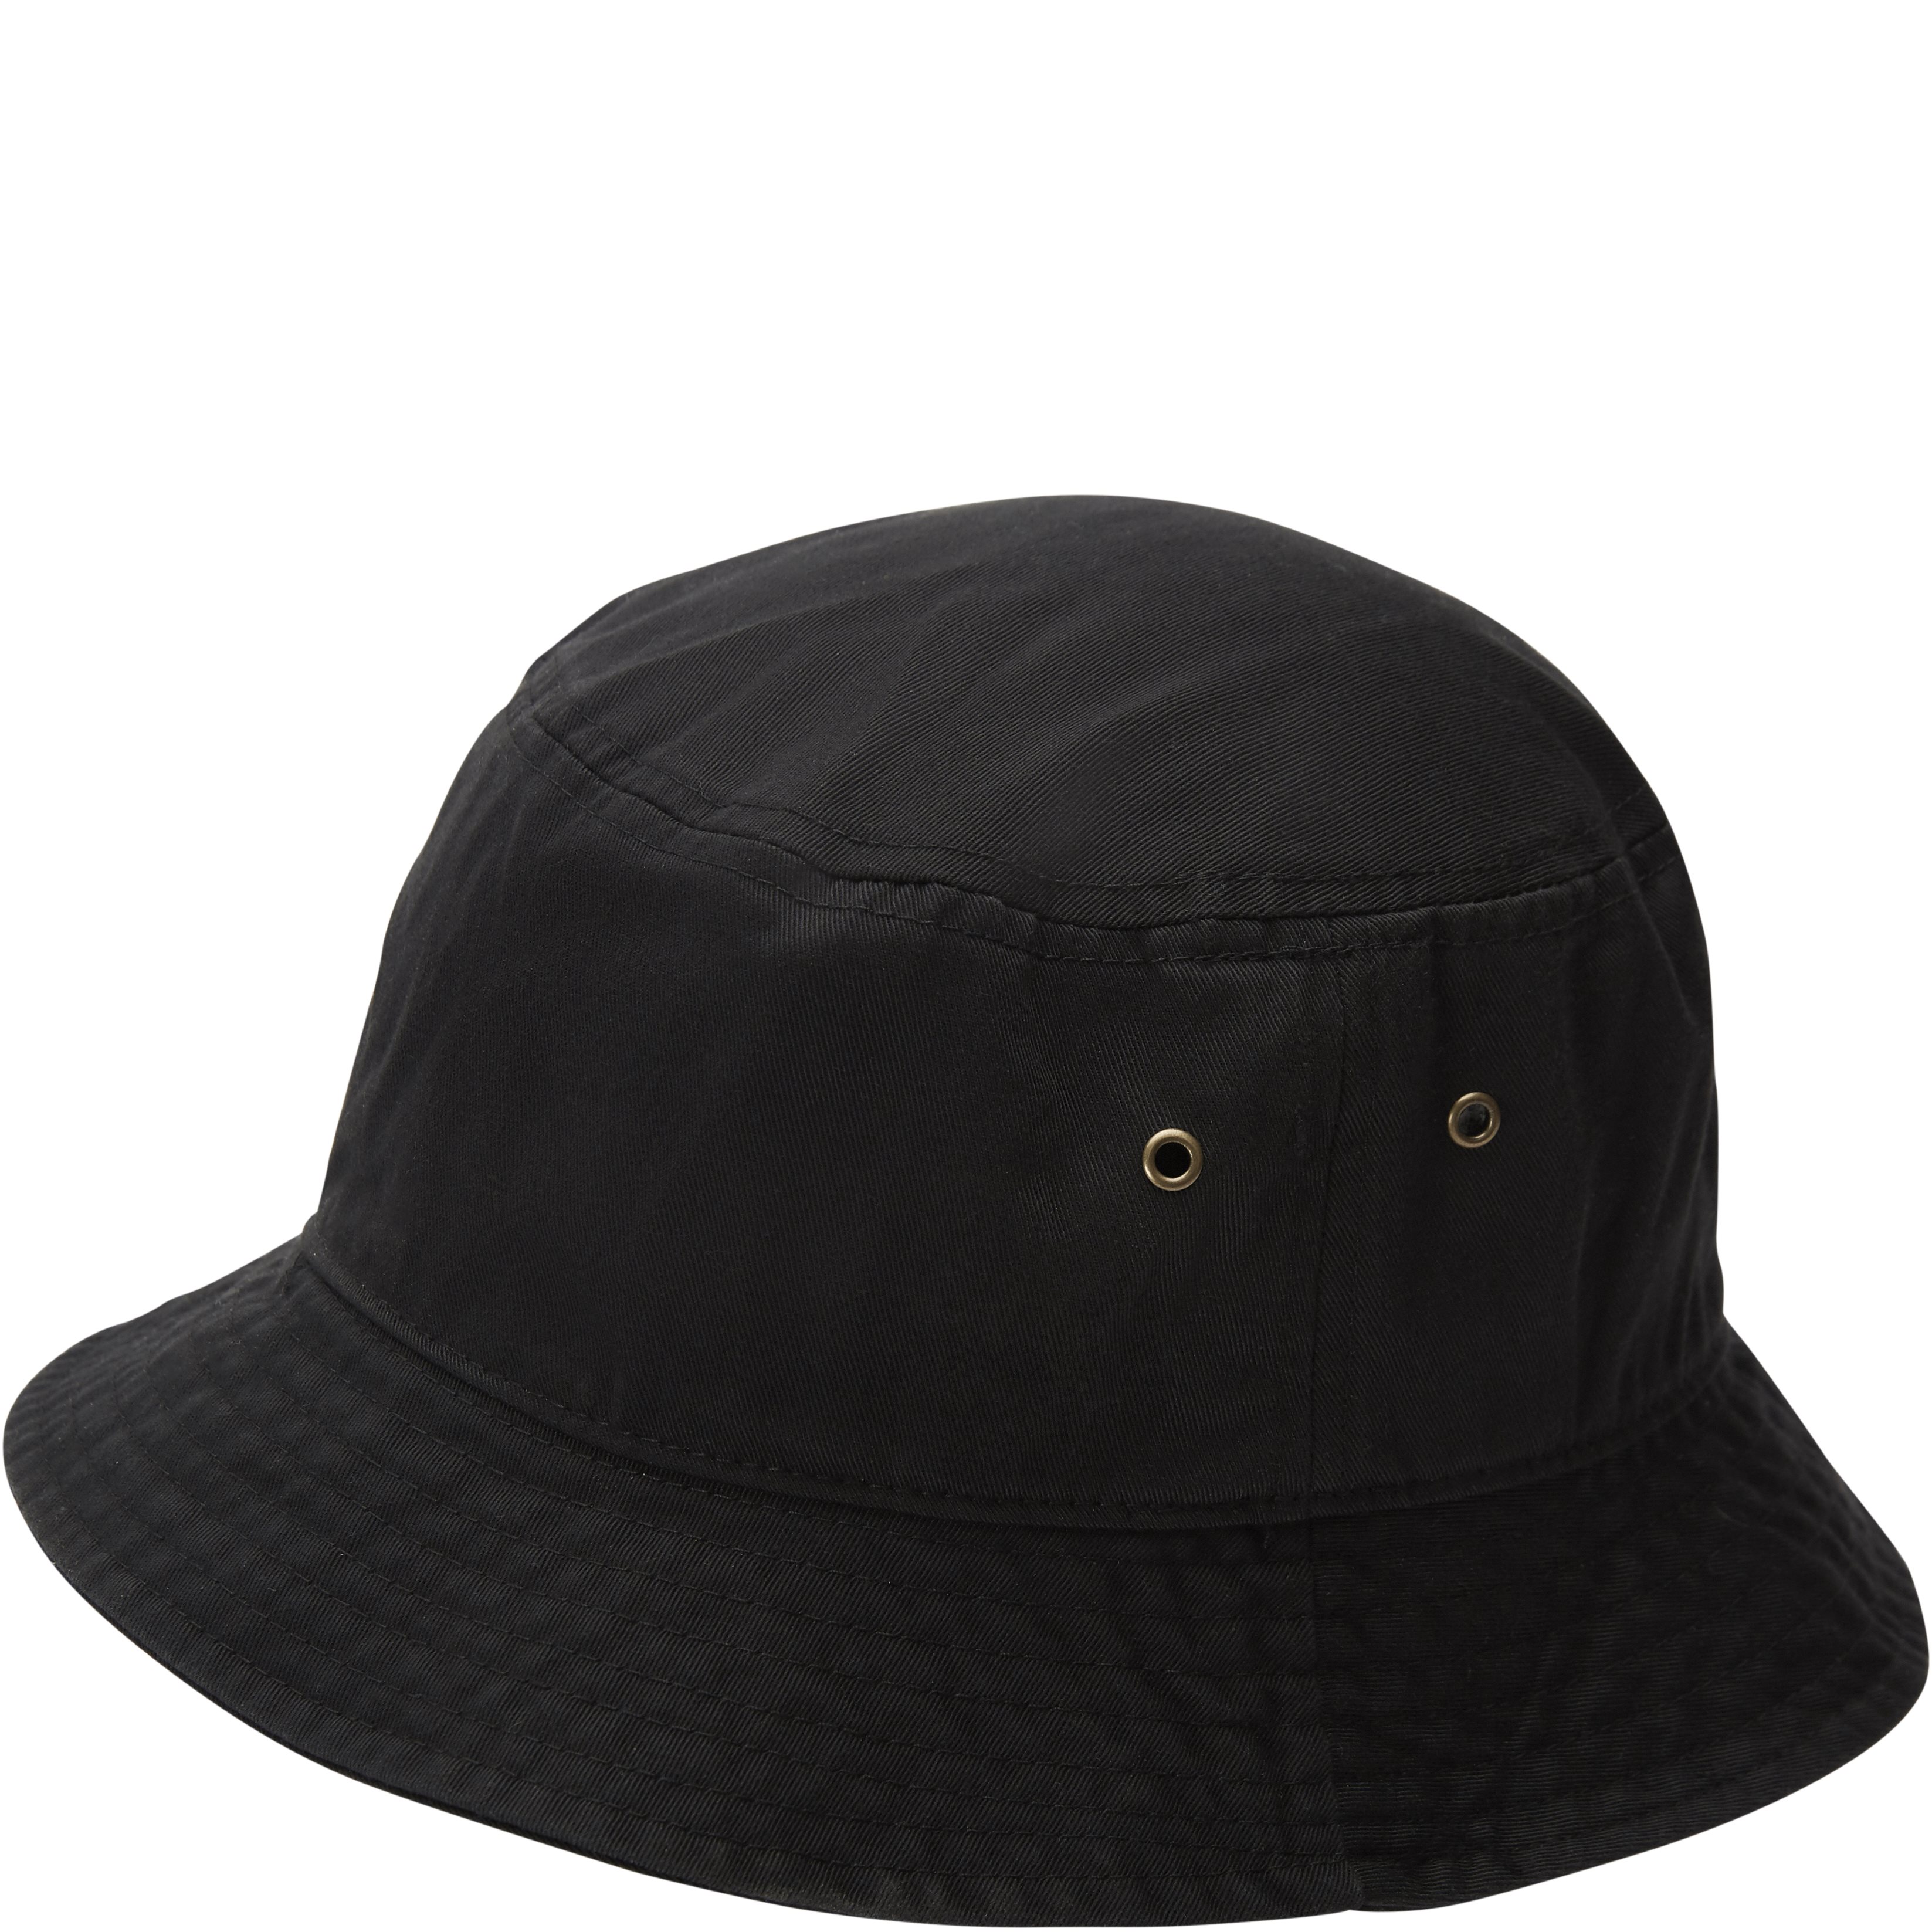 qUINT Hats BUCKET 500 Black